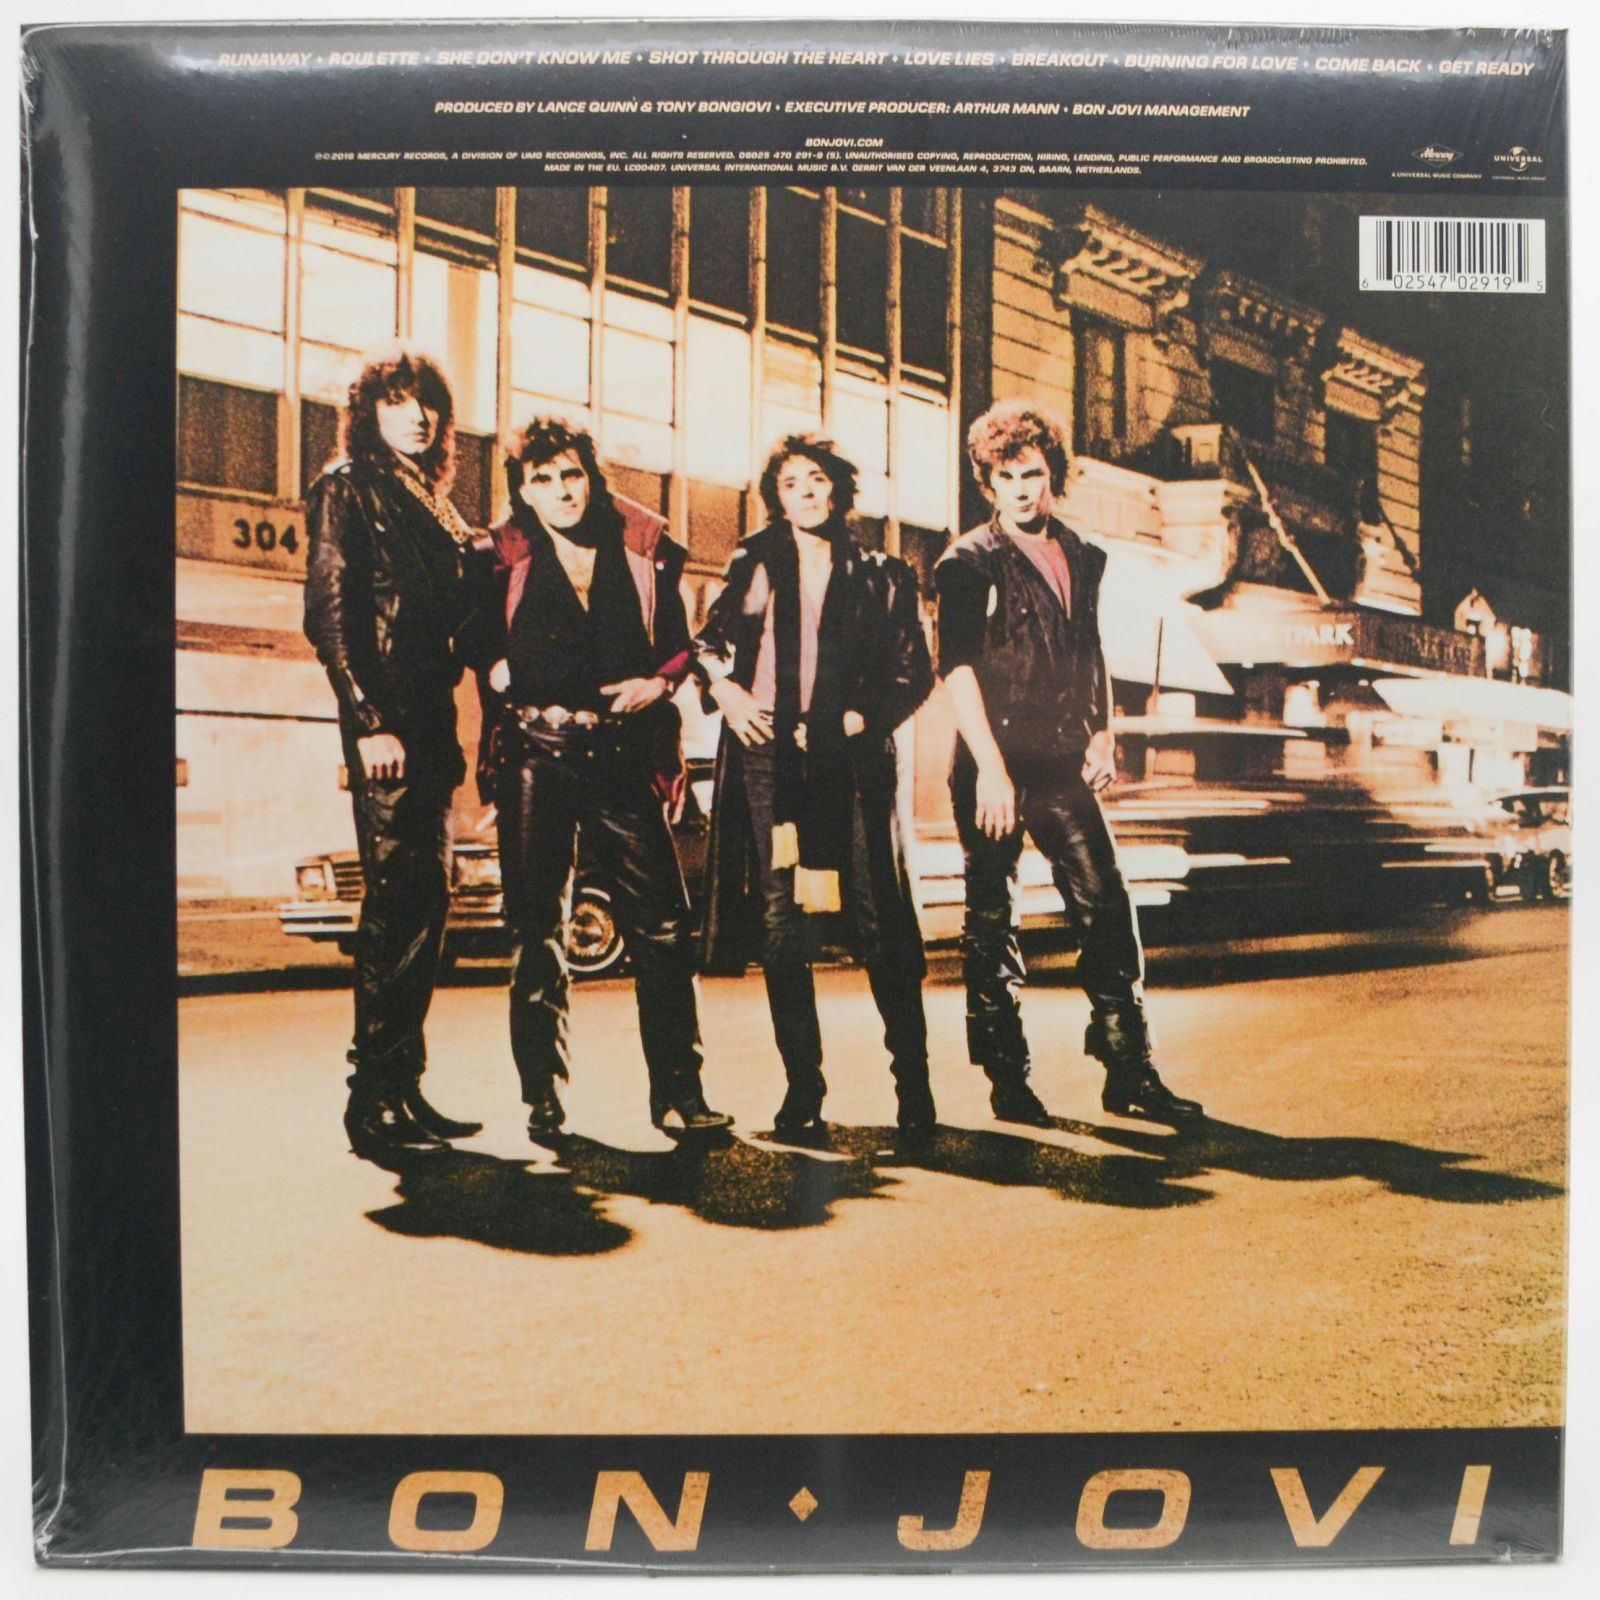 Bon Jovi — Bon Jovi, 1984